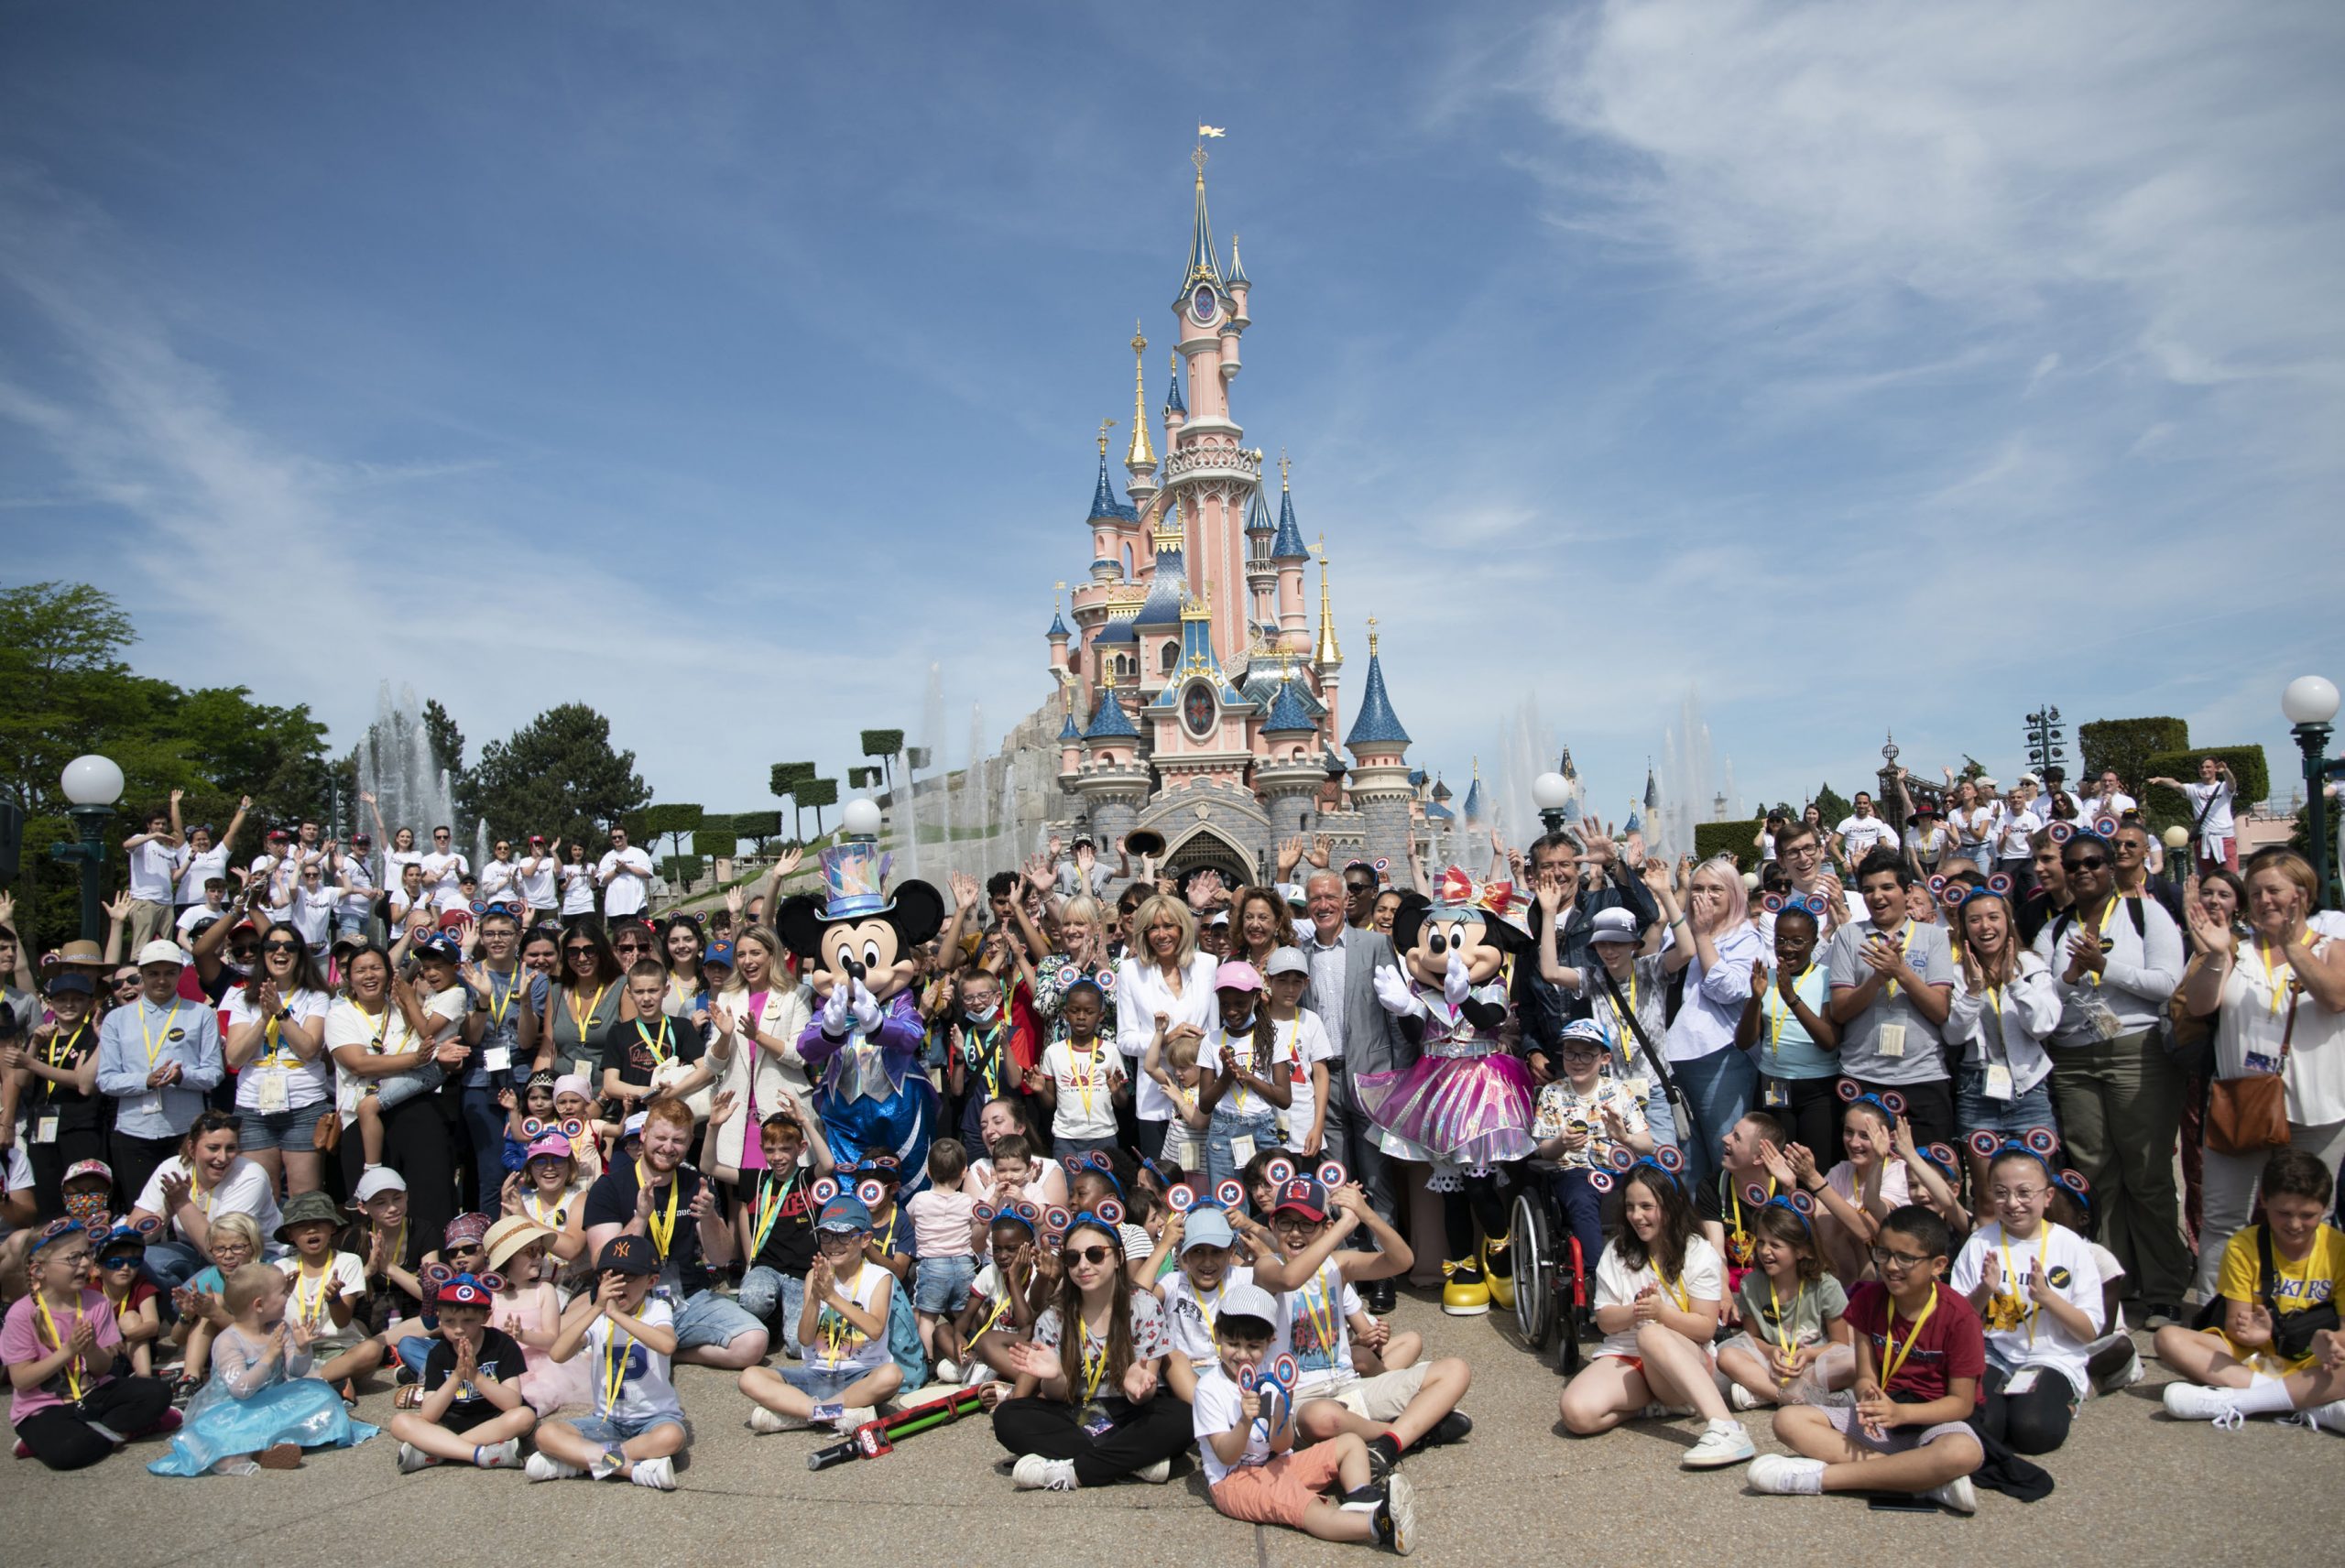 Une journée exceptionnelle à Disneyland Paris pour 500 enfants et adolescents hospitalisés accompagnés de leurs familles, dans le cadre de l’Opération Pièces Jaunes 